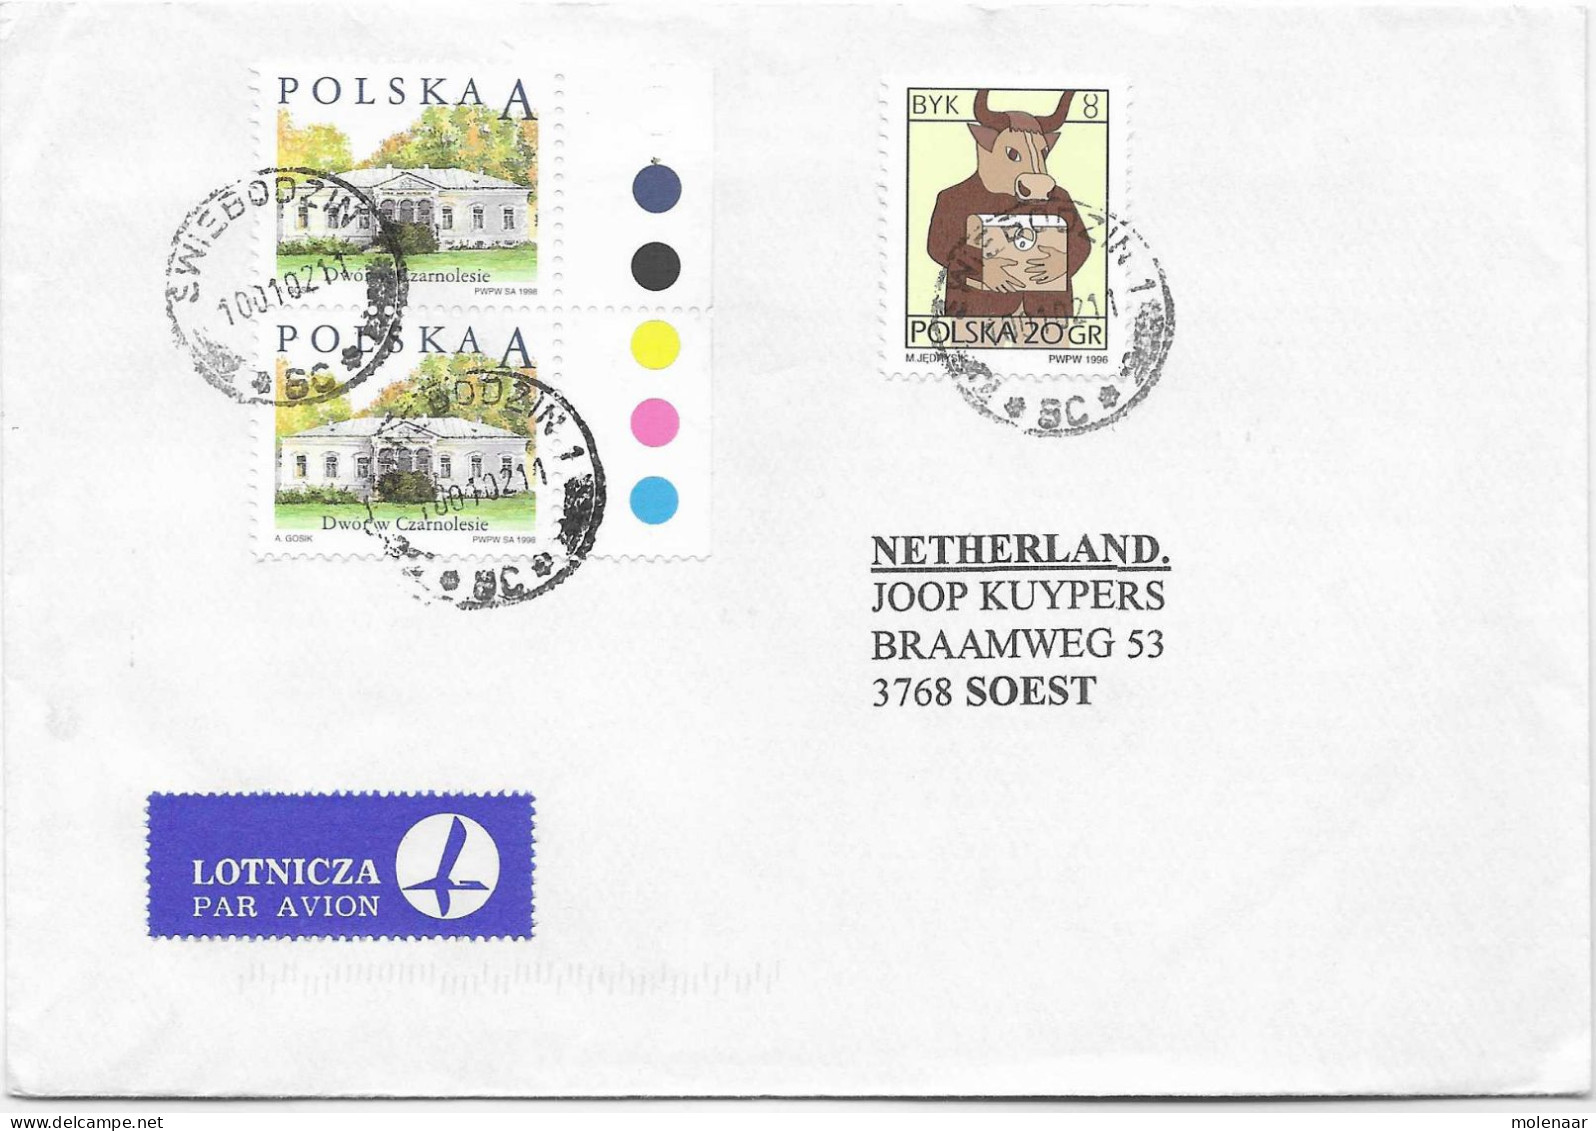 Postzegels > Europa > Polen > 1944-.... Republiek > 2001-10 > Brief Uit 2002 Met 3 Postzegels (17128) - Briefe U. Dokumente